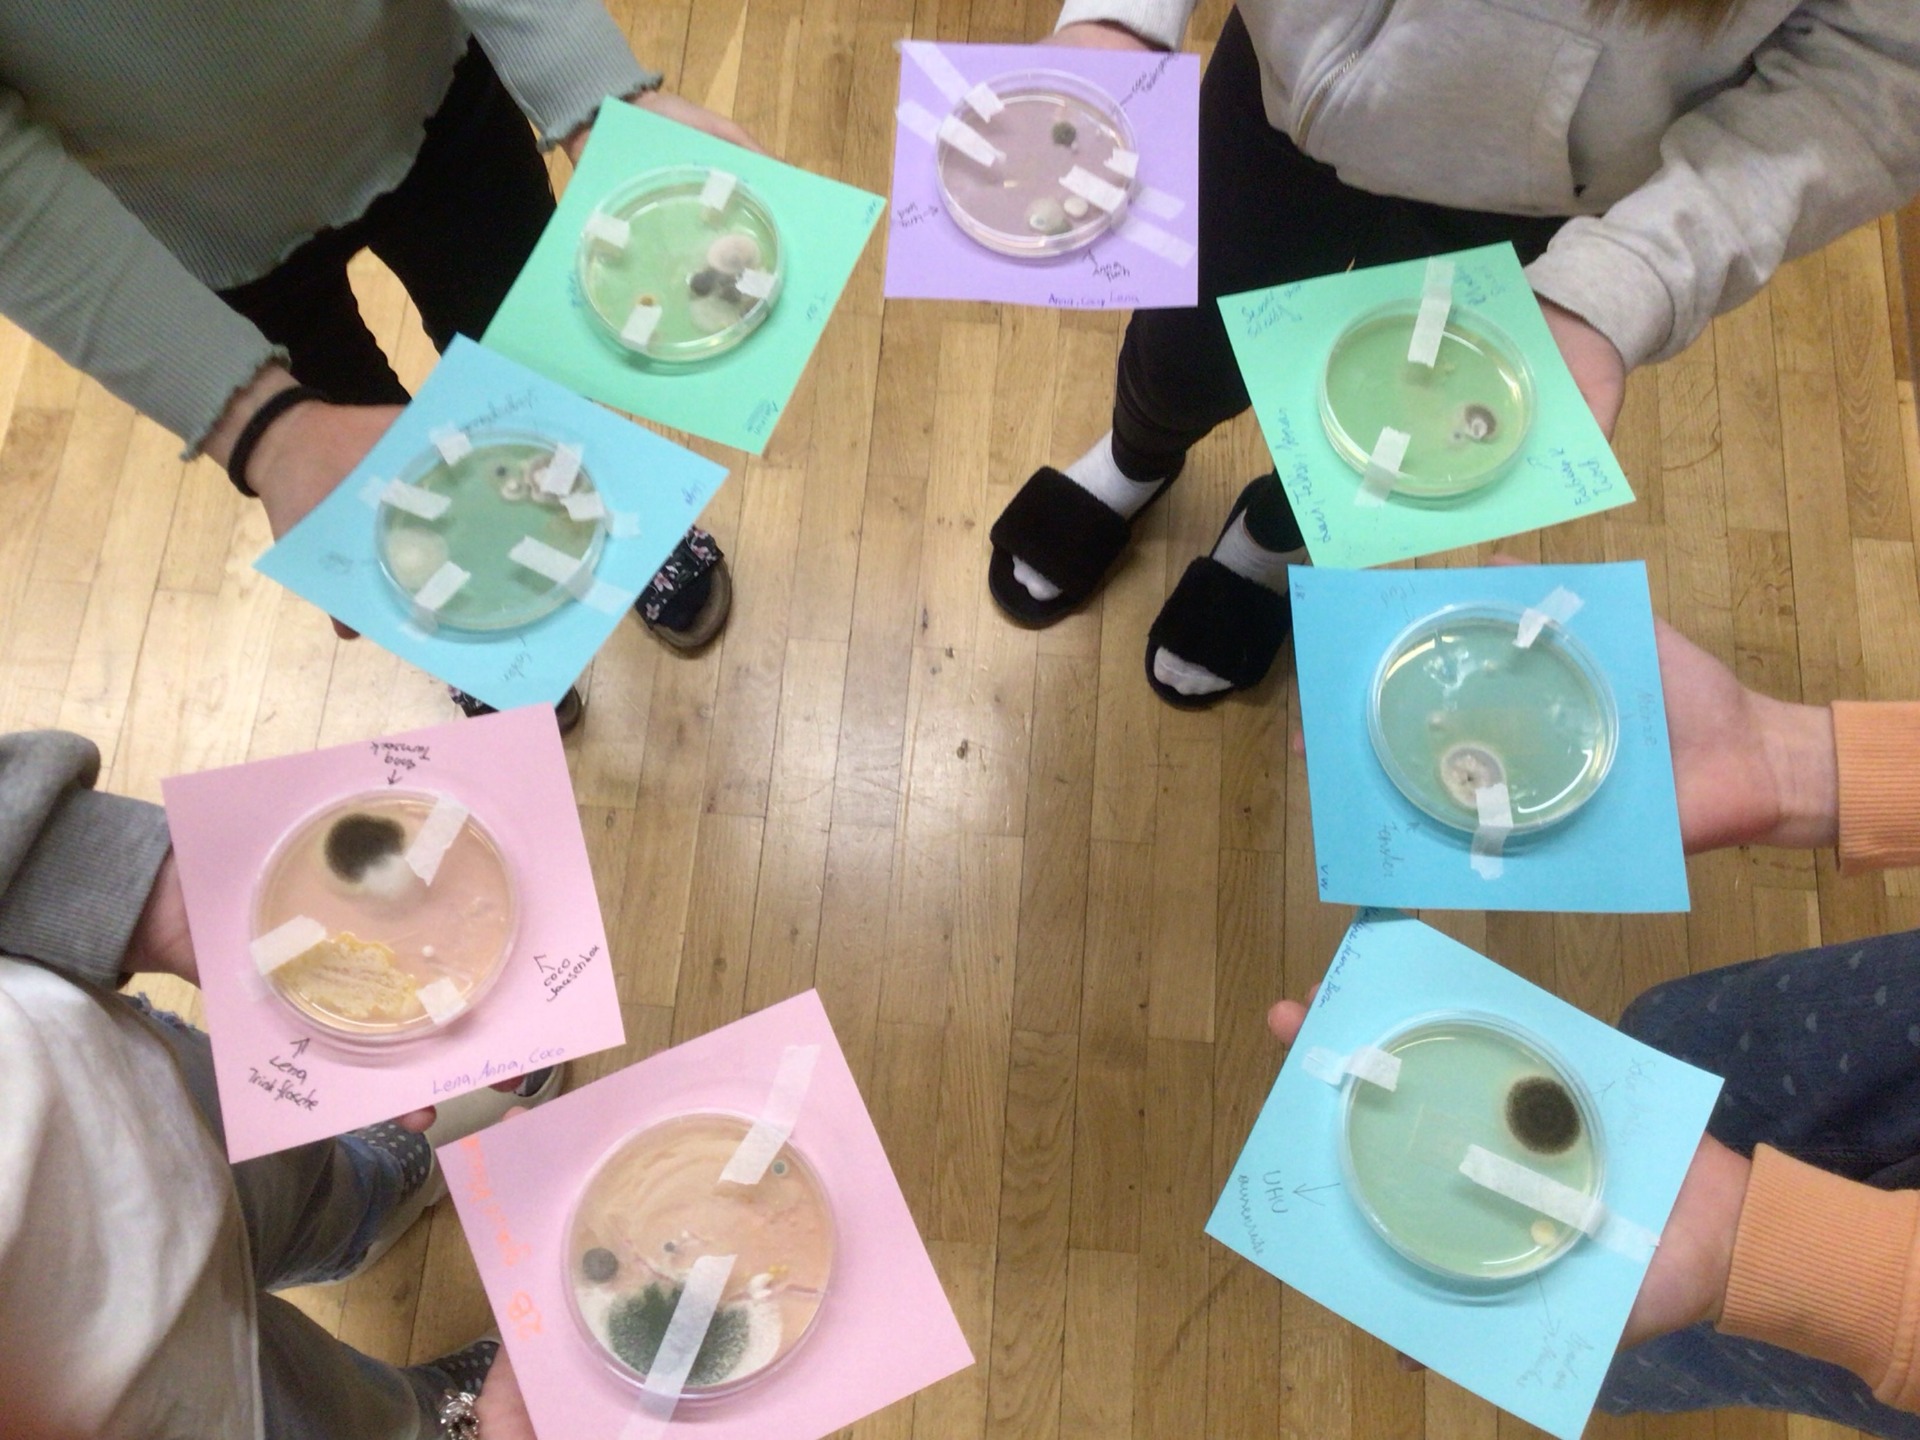 "Digitale Grundbildung: Schülerinnen und Schüler der 2. Klasse erkunden die Mikrowelt mit Petrischalenexperimenten" - Bild 2